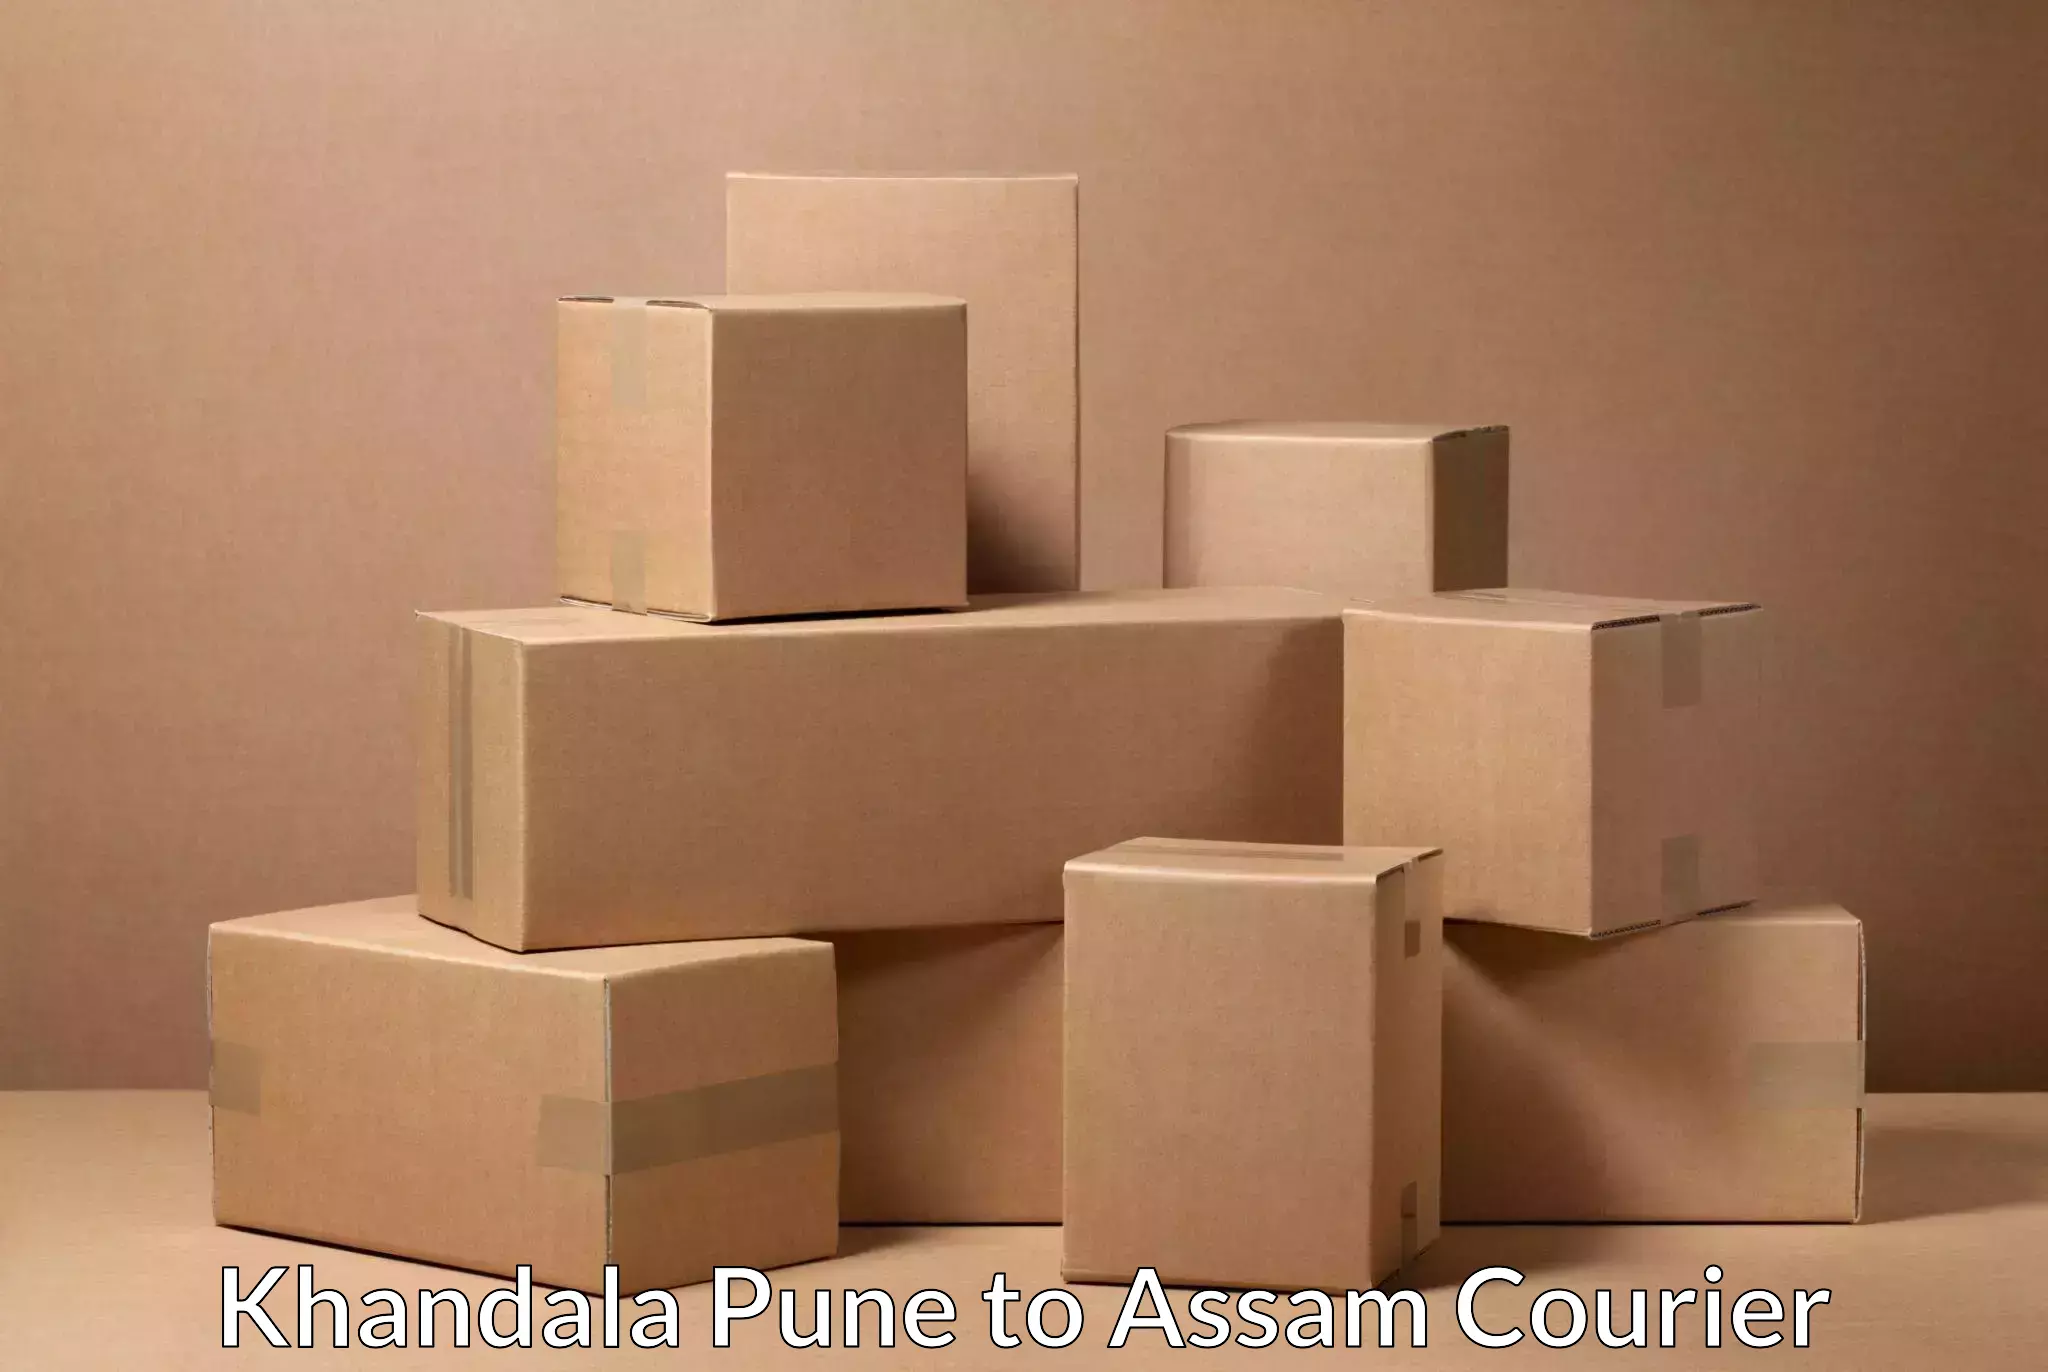 Urgent courier needs Khandala Pune to Amoni